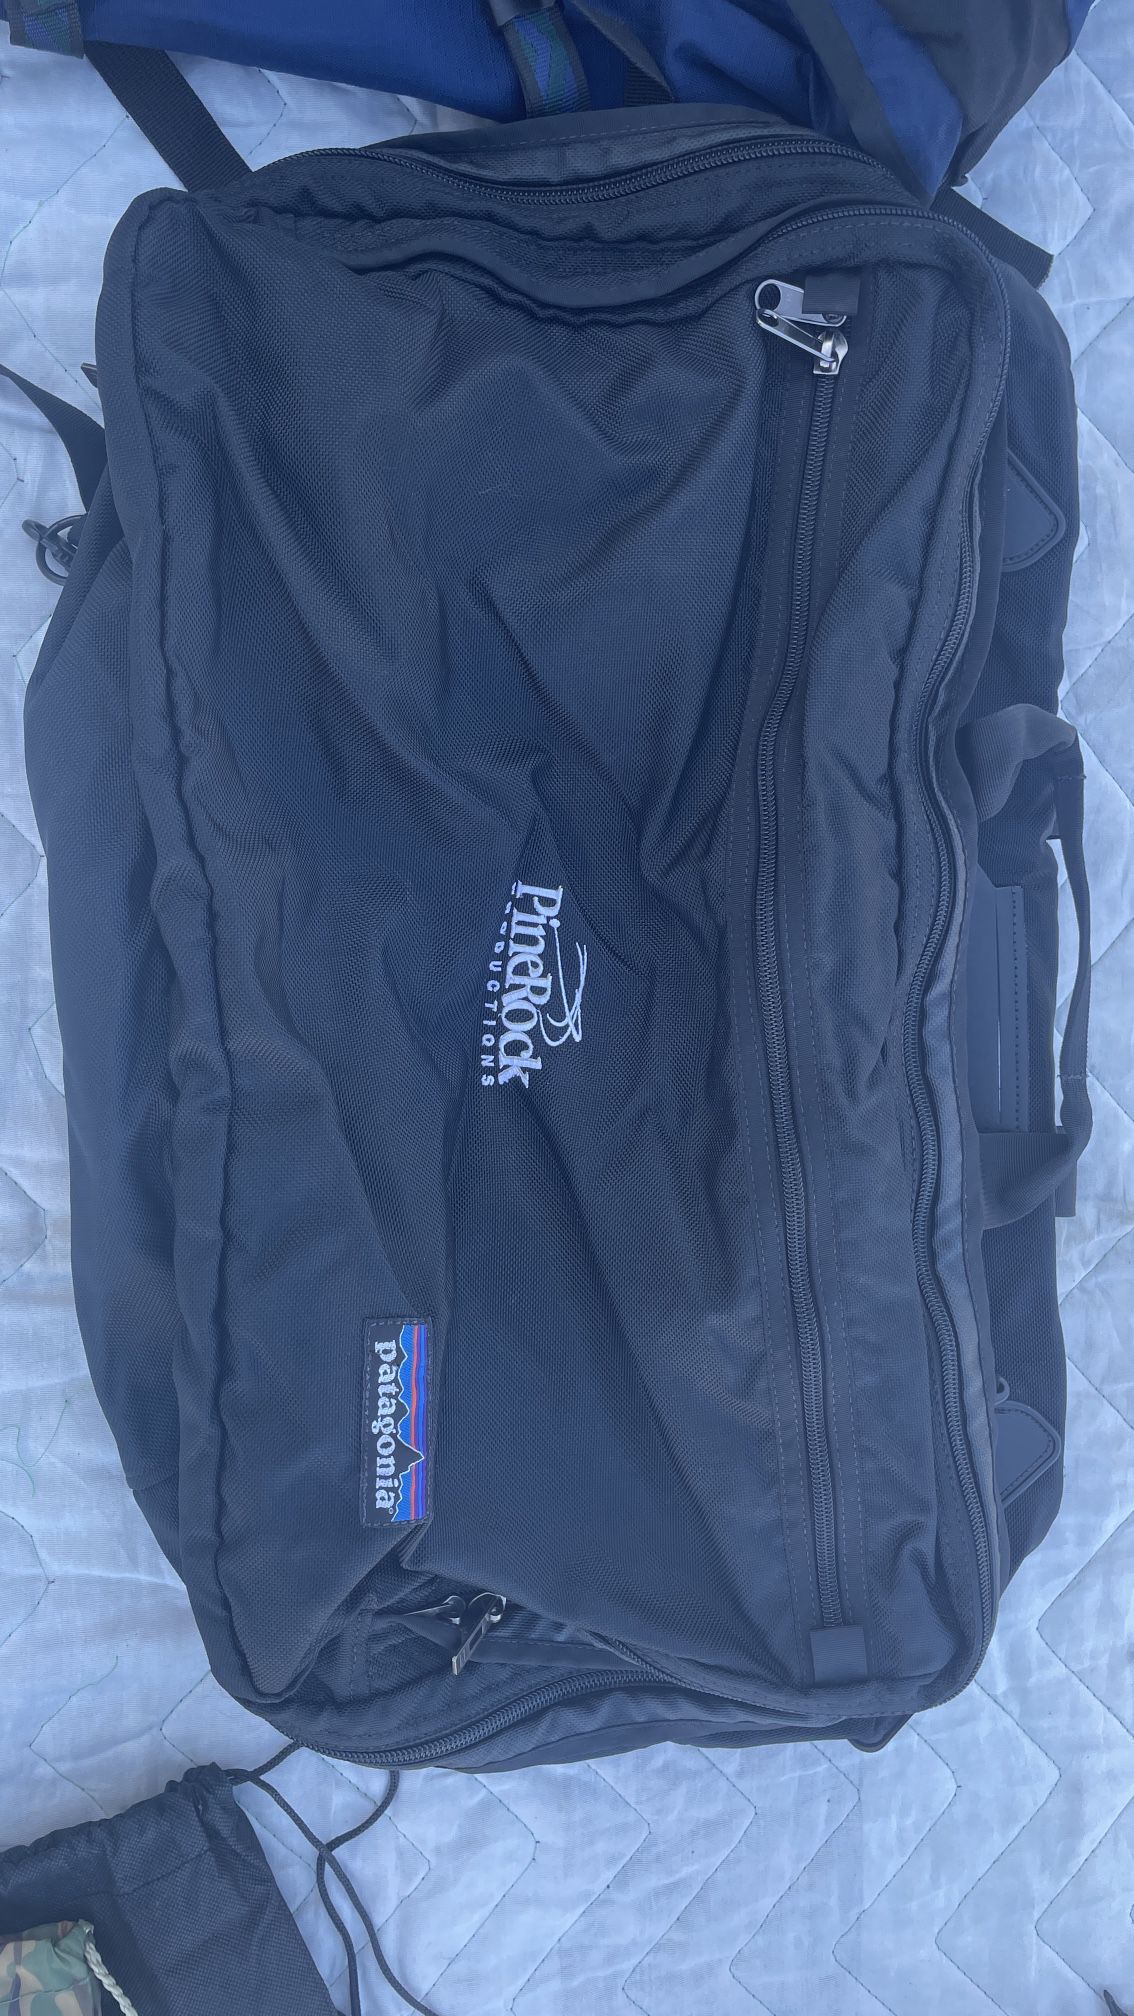 Patagonia Duffle Bag/backpack